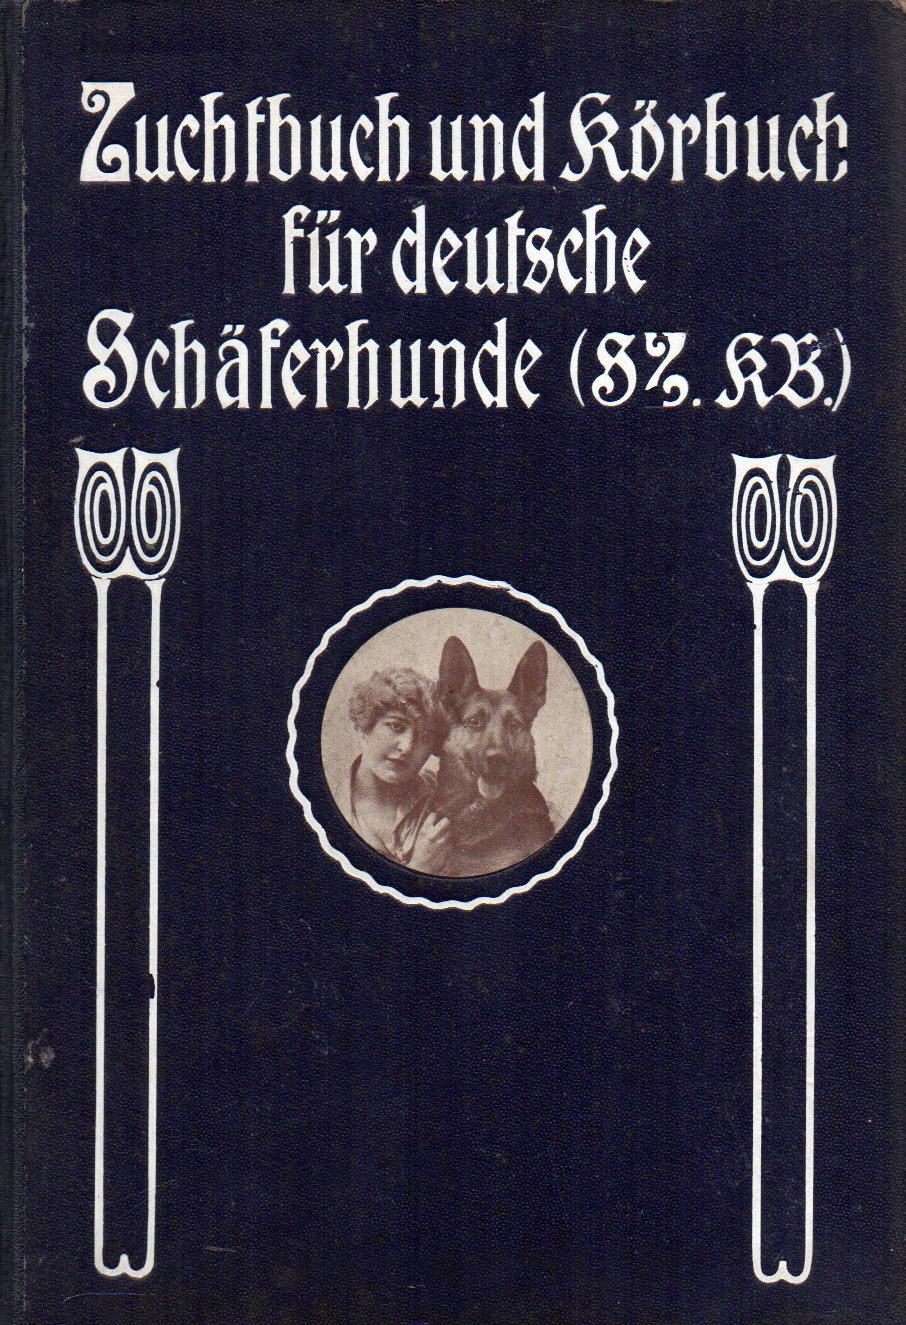 Verein für Deutsche Schäferhunde(  Zuchtbuch (SZ) und Körbuch (KB) für deutsche Schäferhunde 